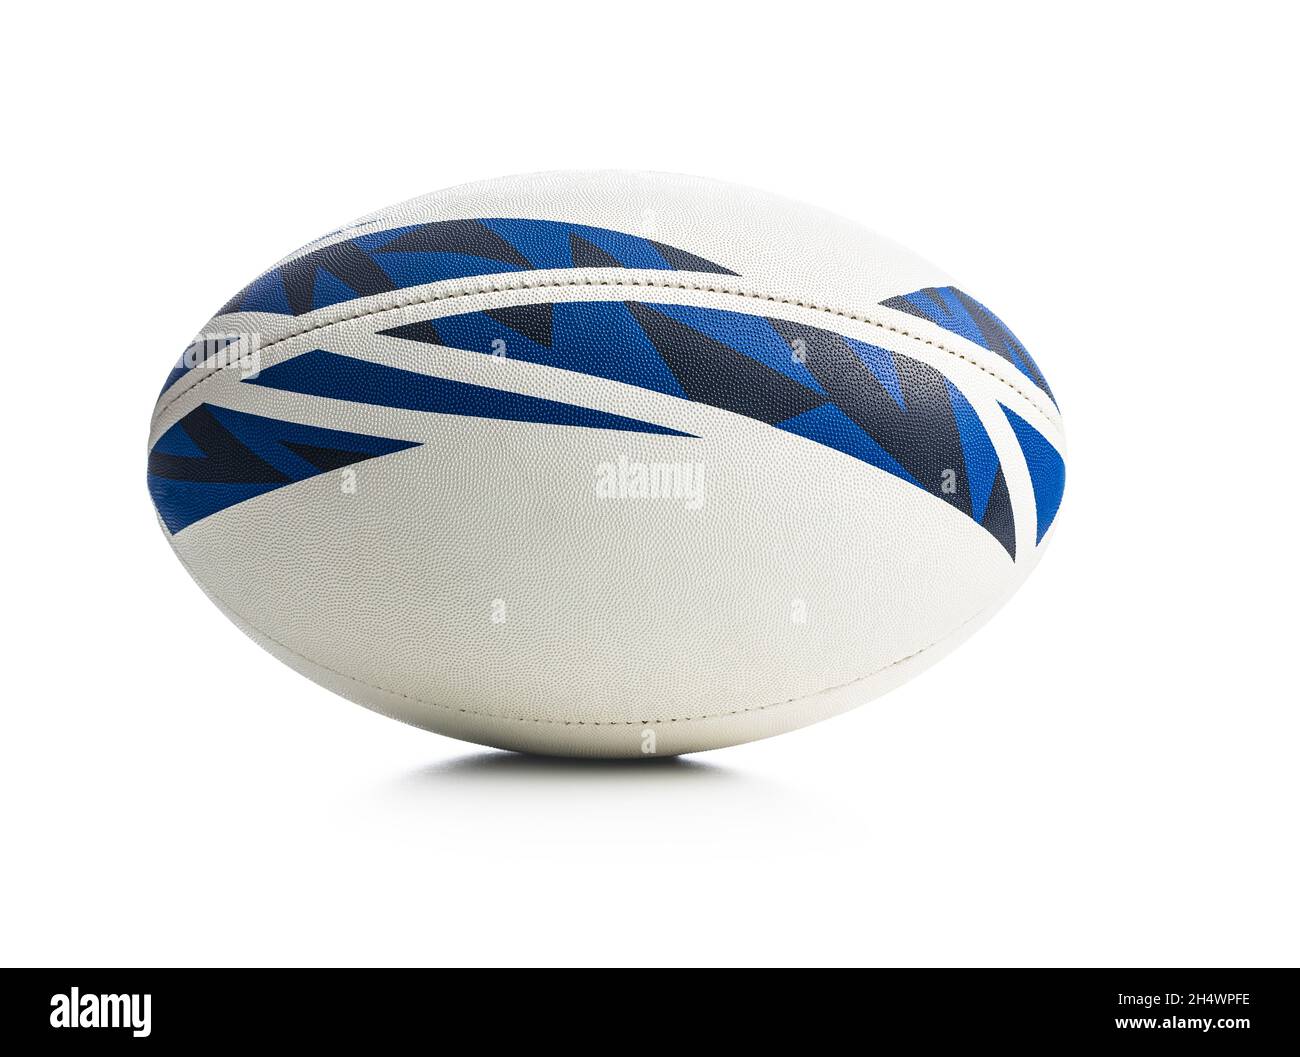 Nuova palla di rugby isolata su sfondo bianco. Foto Stock